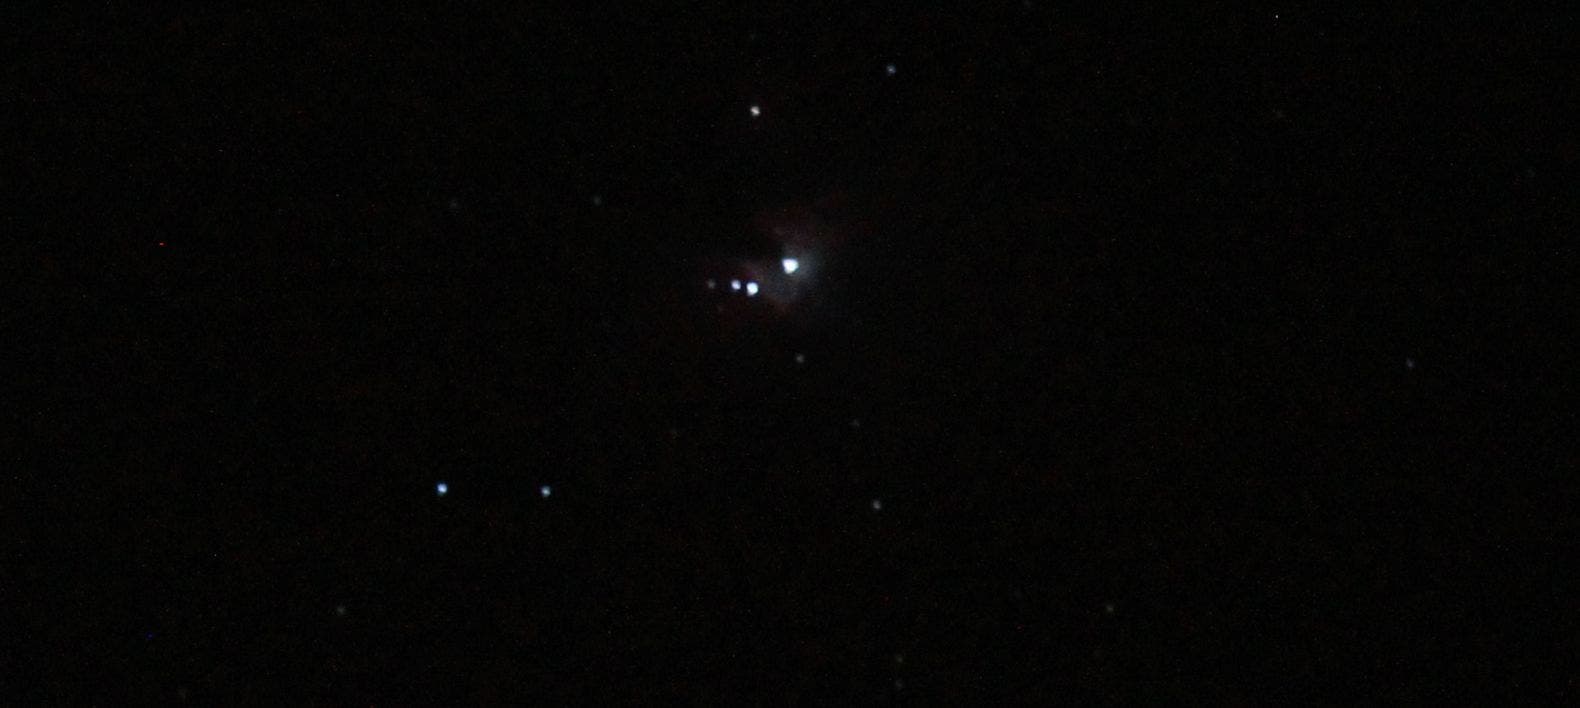 Orionnebel